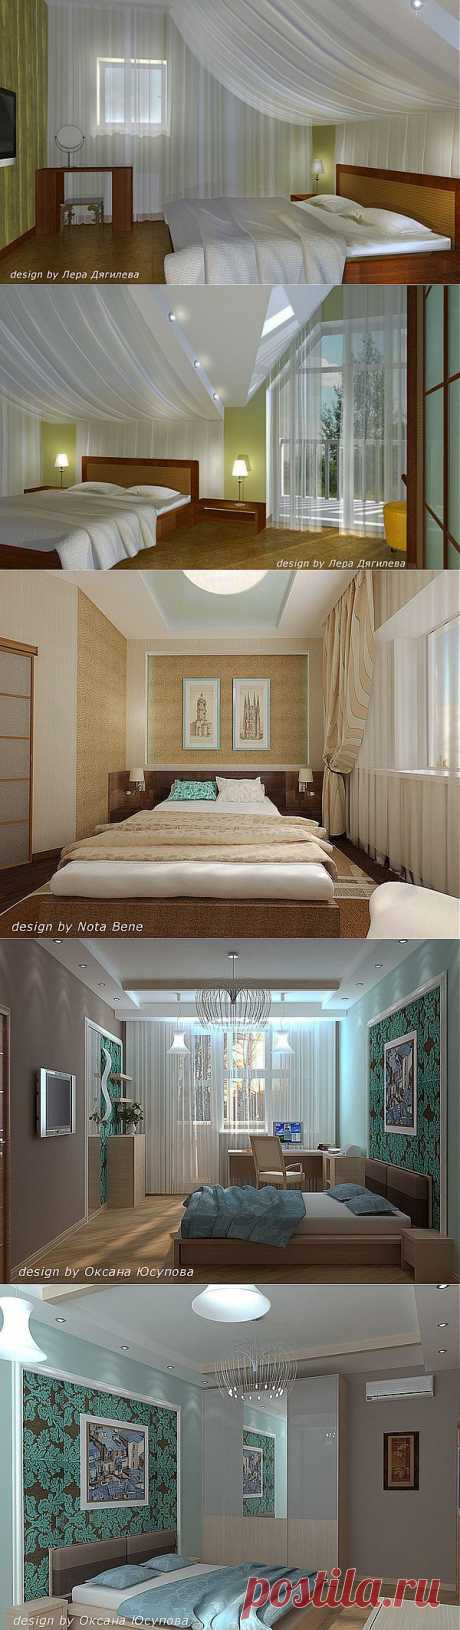 Лаконичный дизайн современного интерьера спальни.